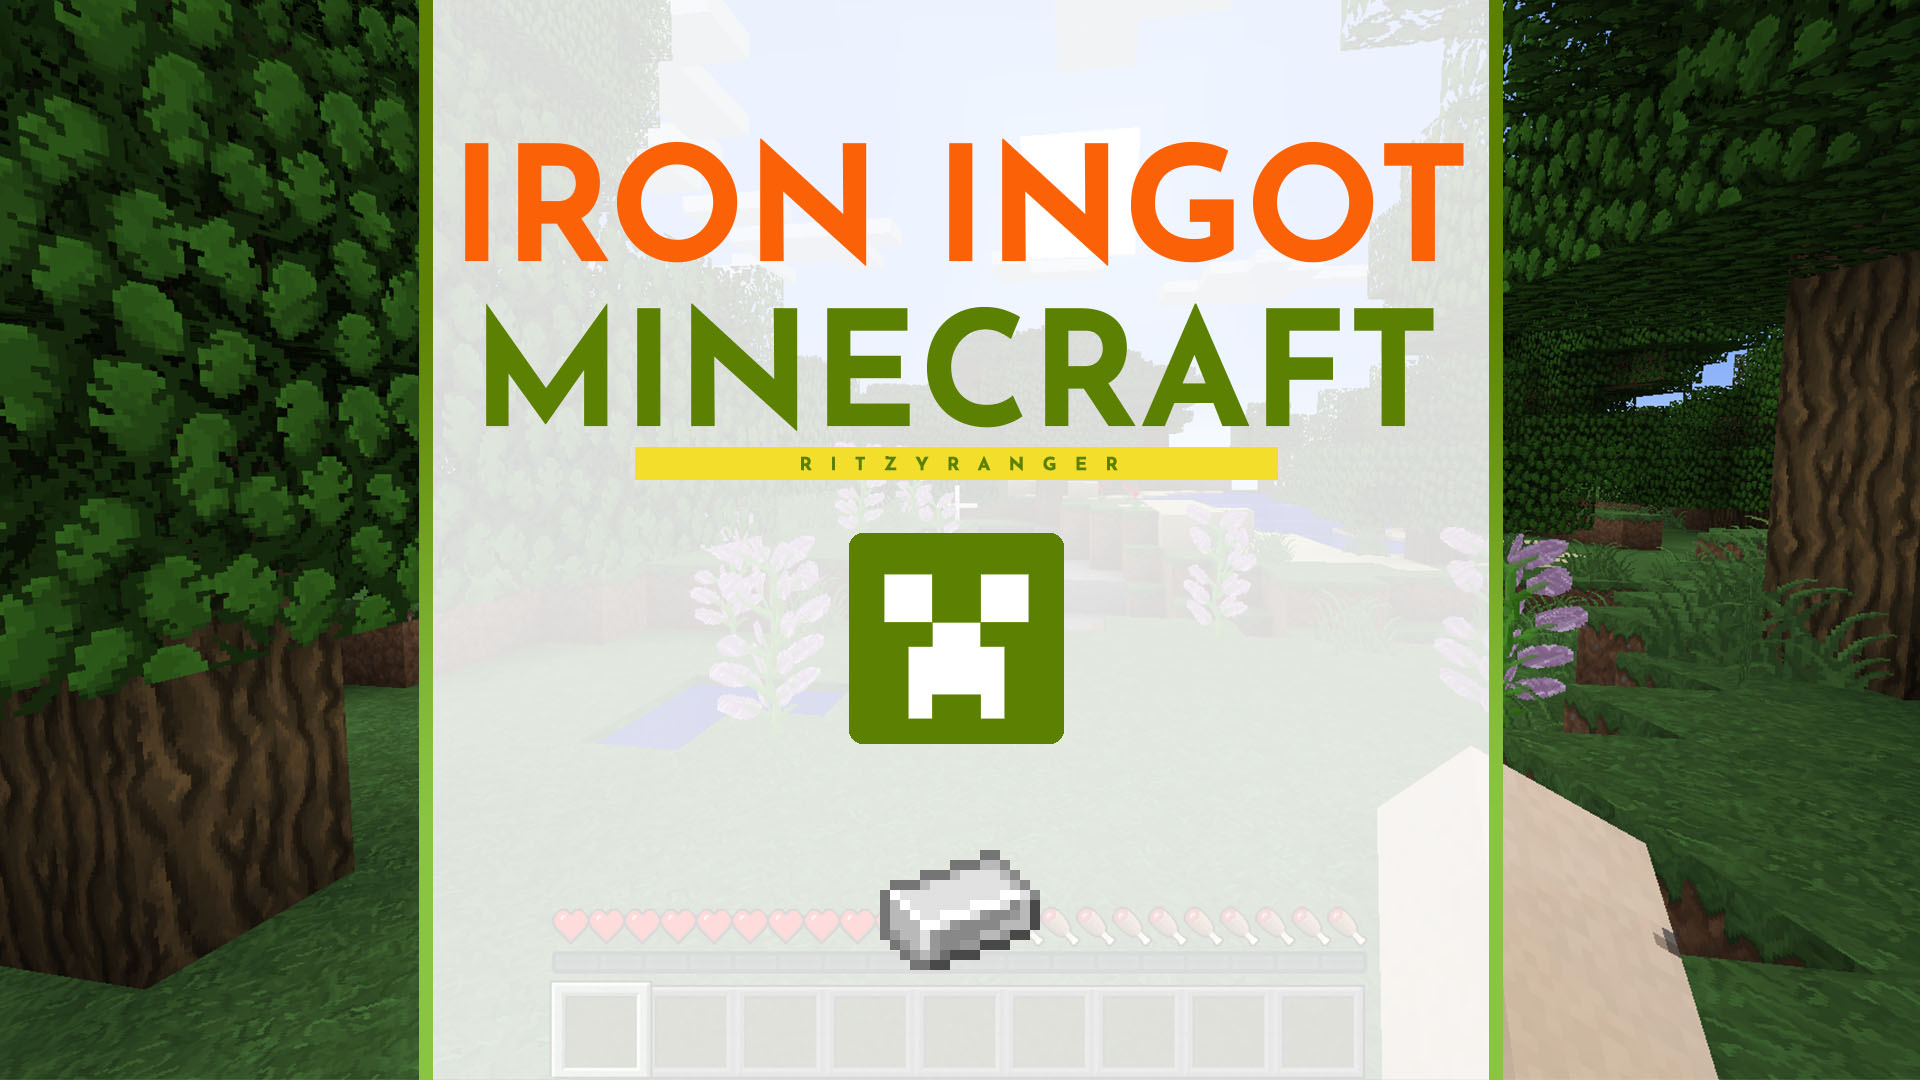 Iron Ingot Minecraft